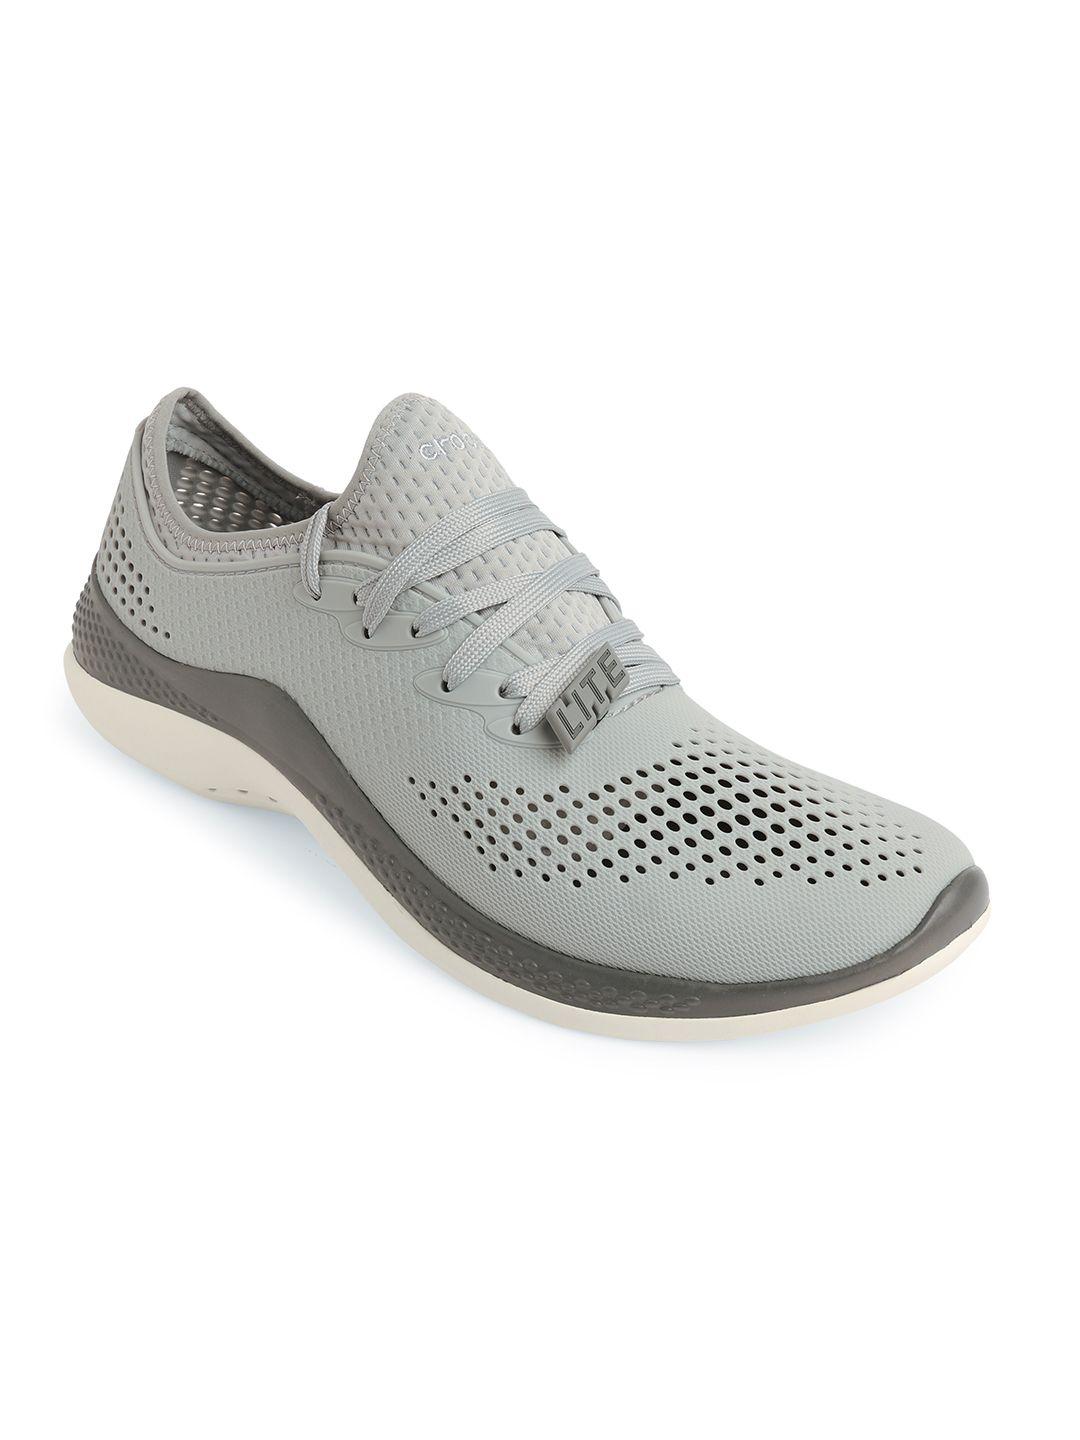 crocs-men-grey-perforated-sneakers